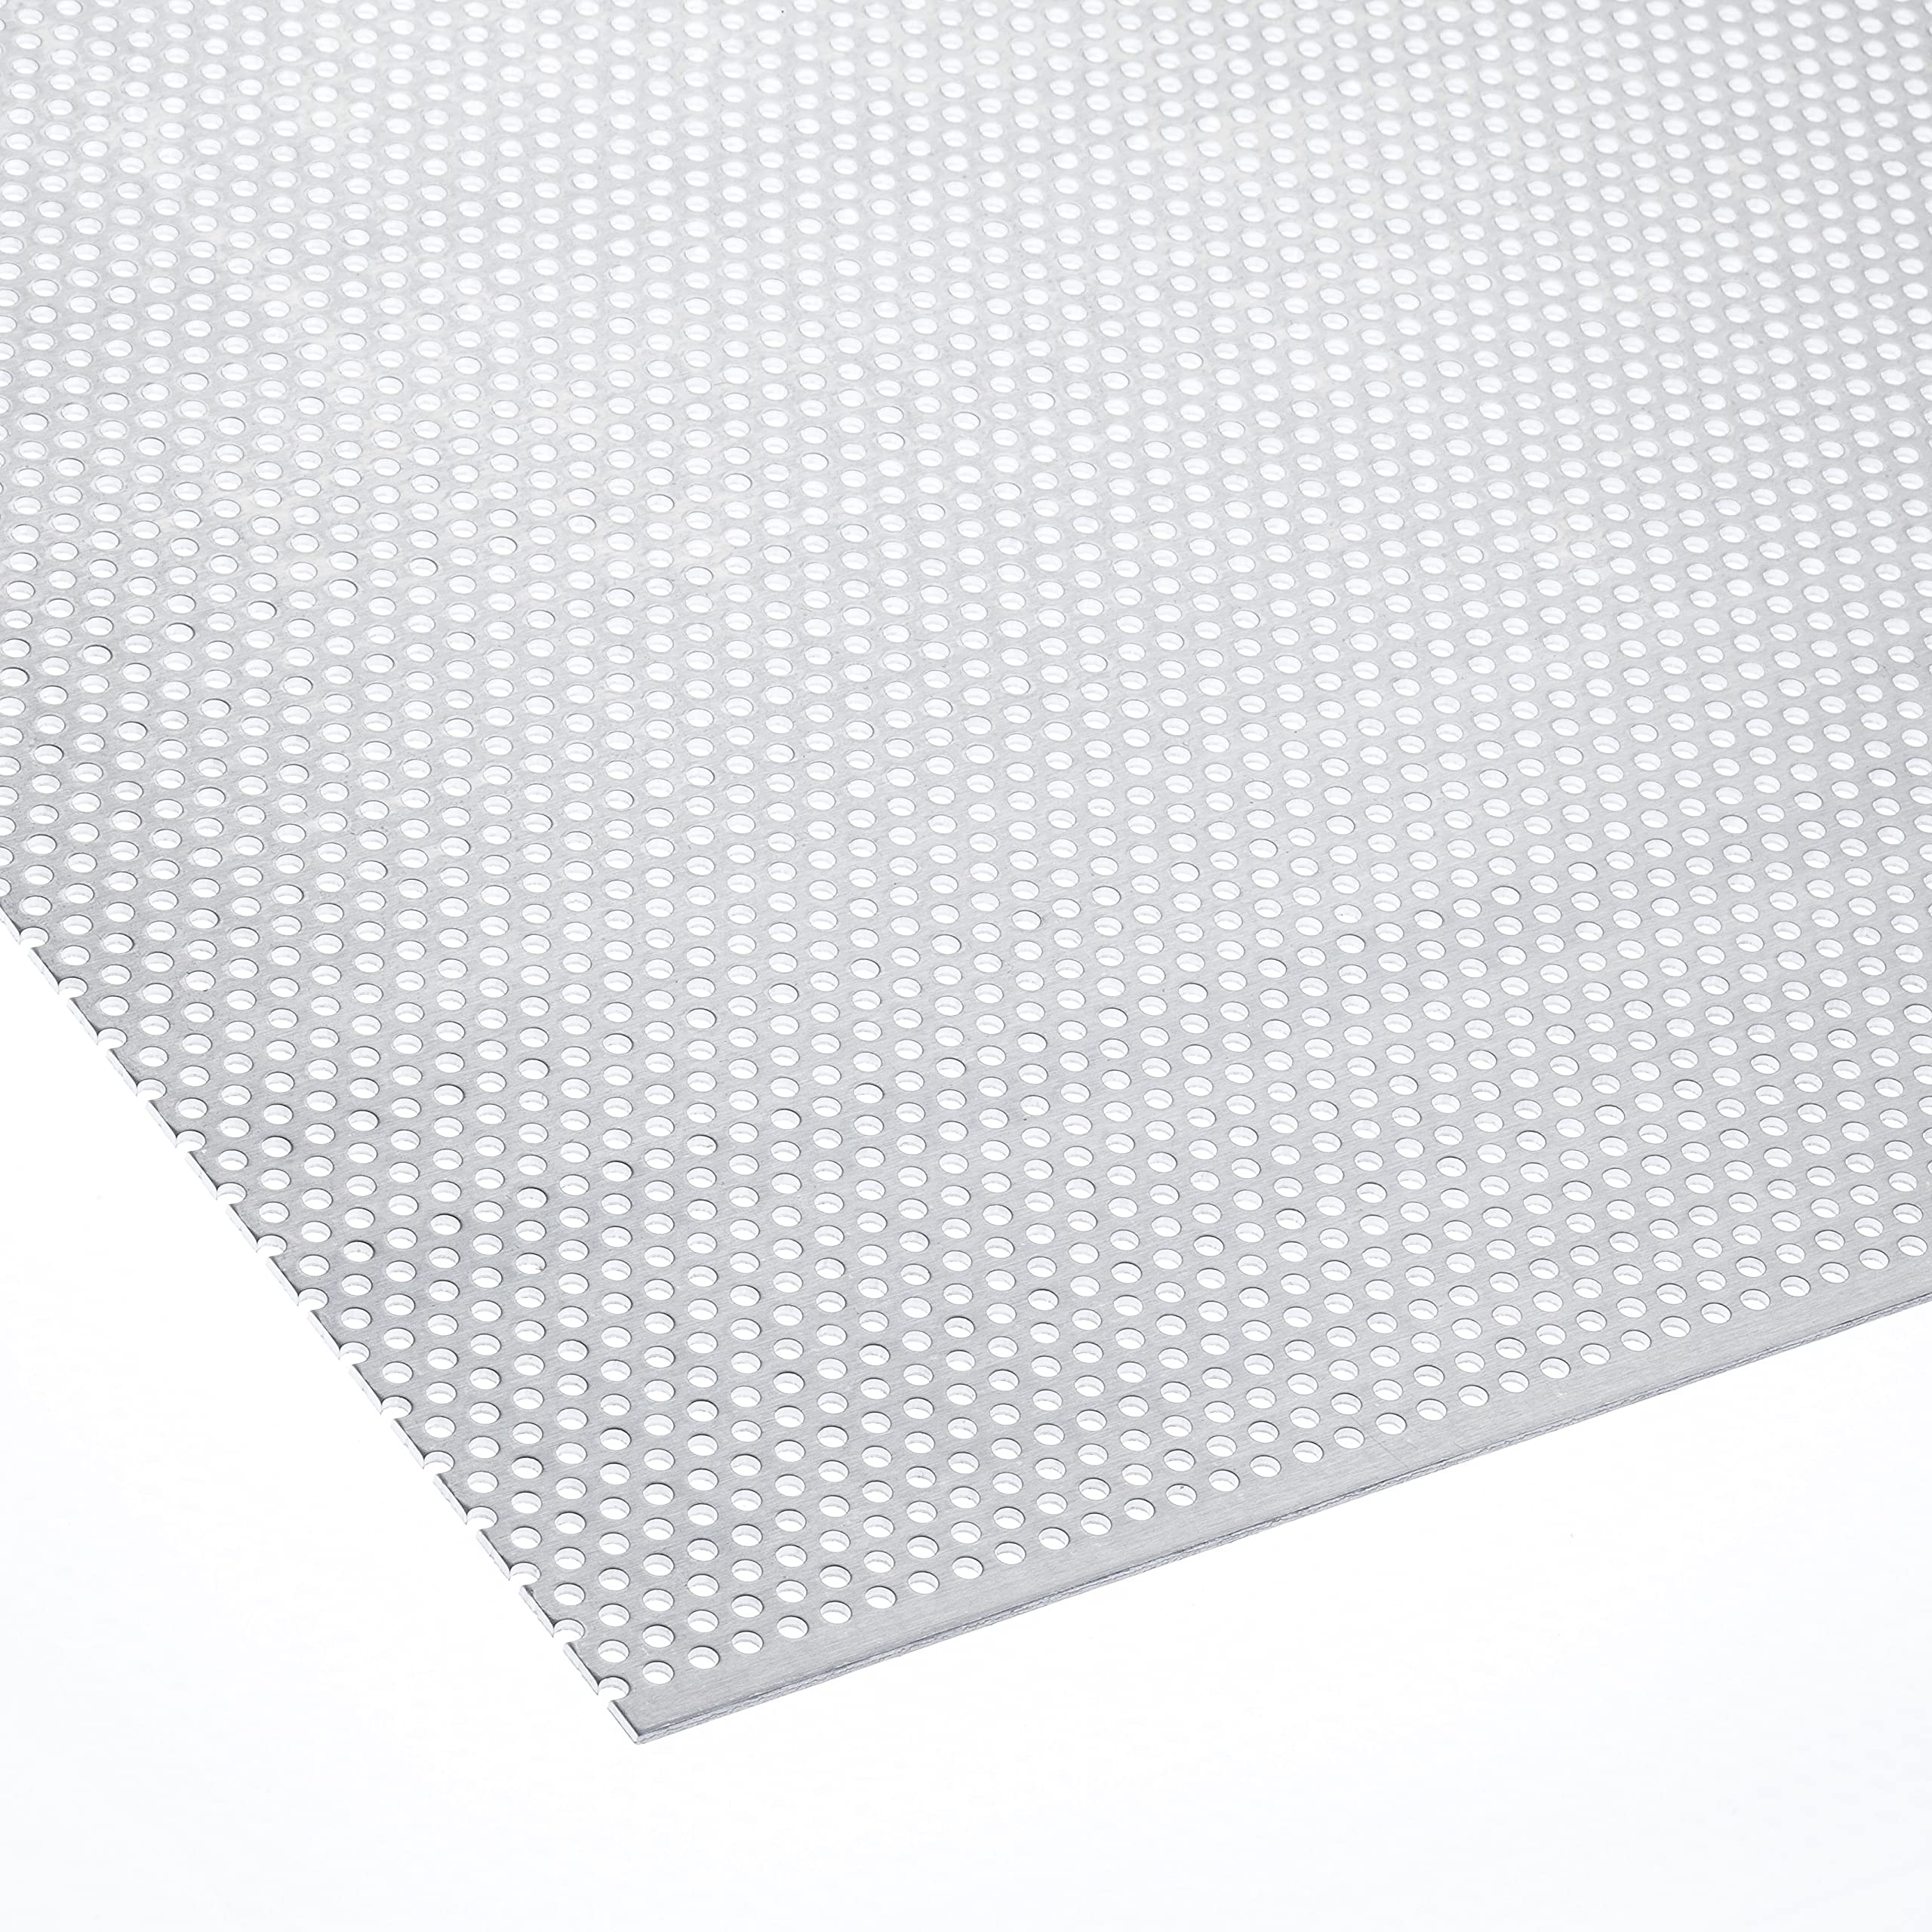 Lochblech Aluminium RV5-8 Alu 1 mm dick Blech Zuschnitt nach Wunschmaß (1000 mm x 550 mm)